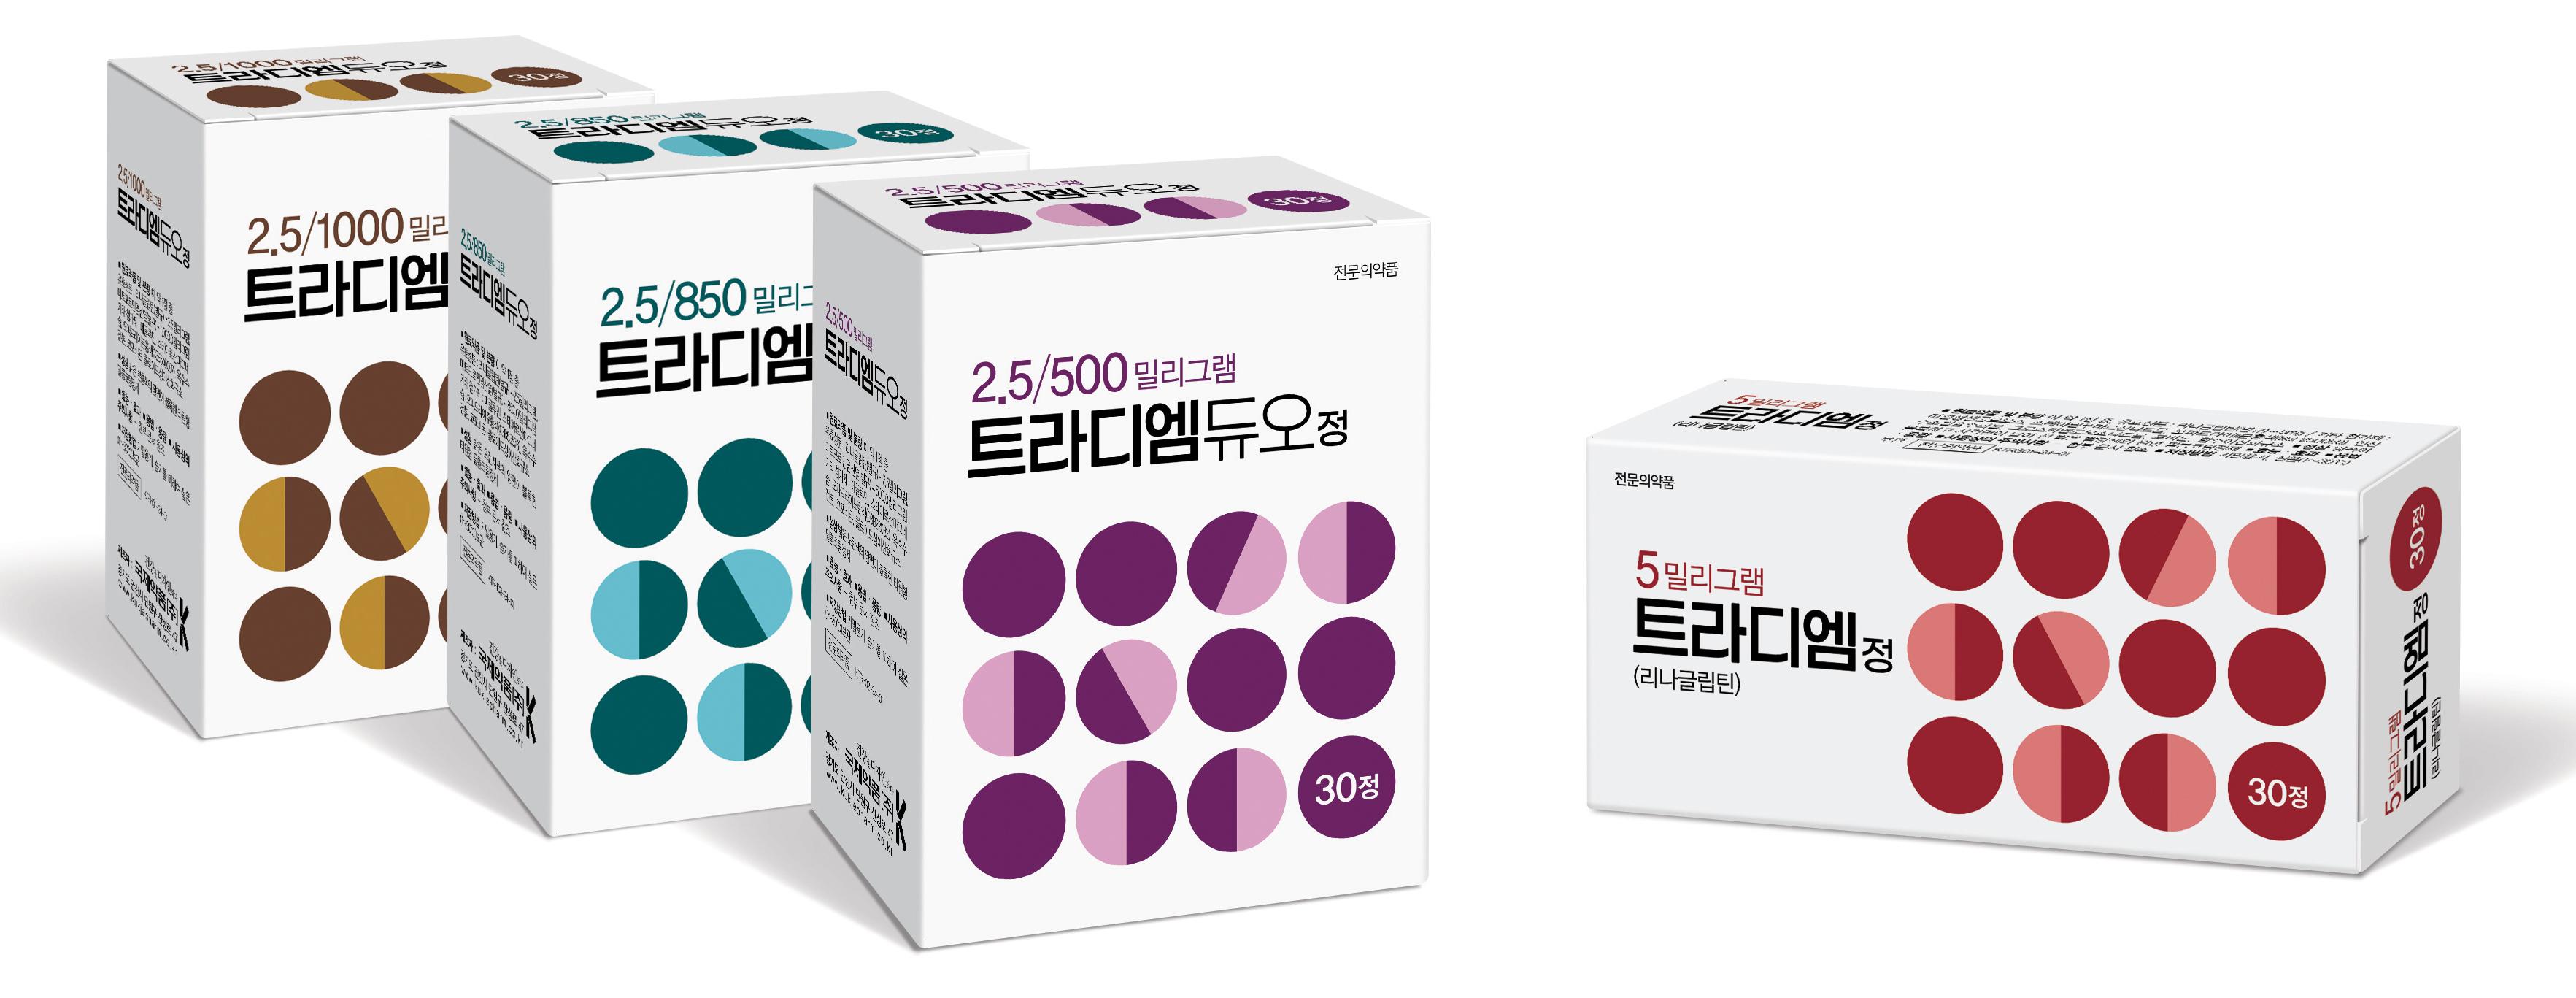 국제약품, 리나글립틴 단·복합제 ‘트라디엠’ 시리즈 4종 출시